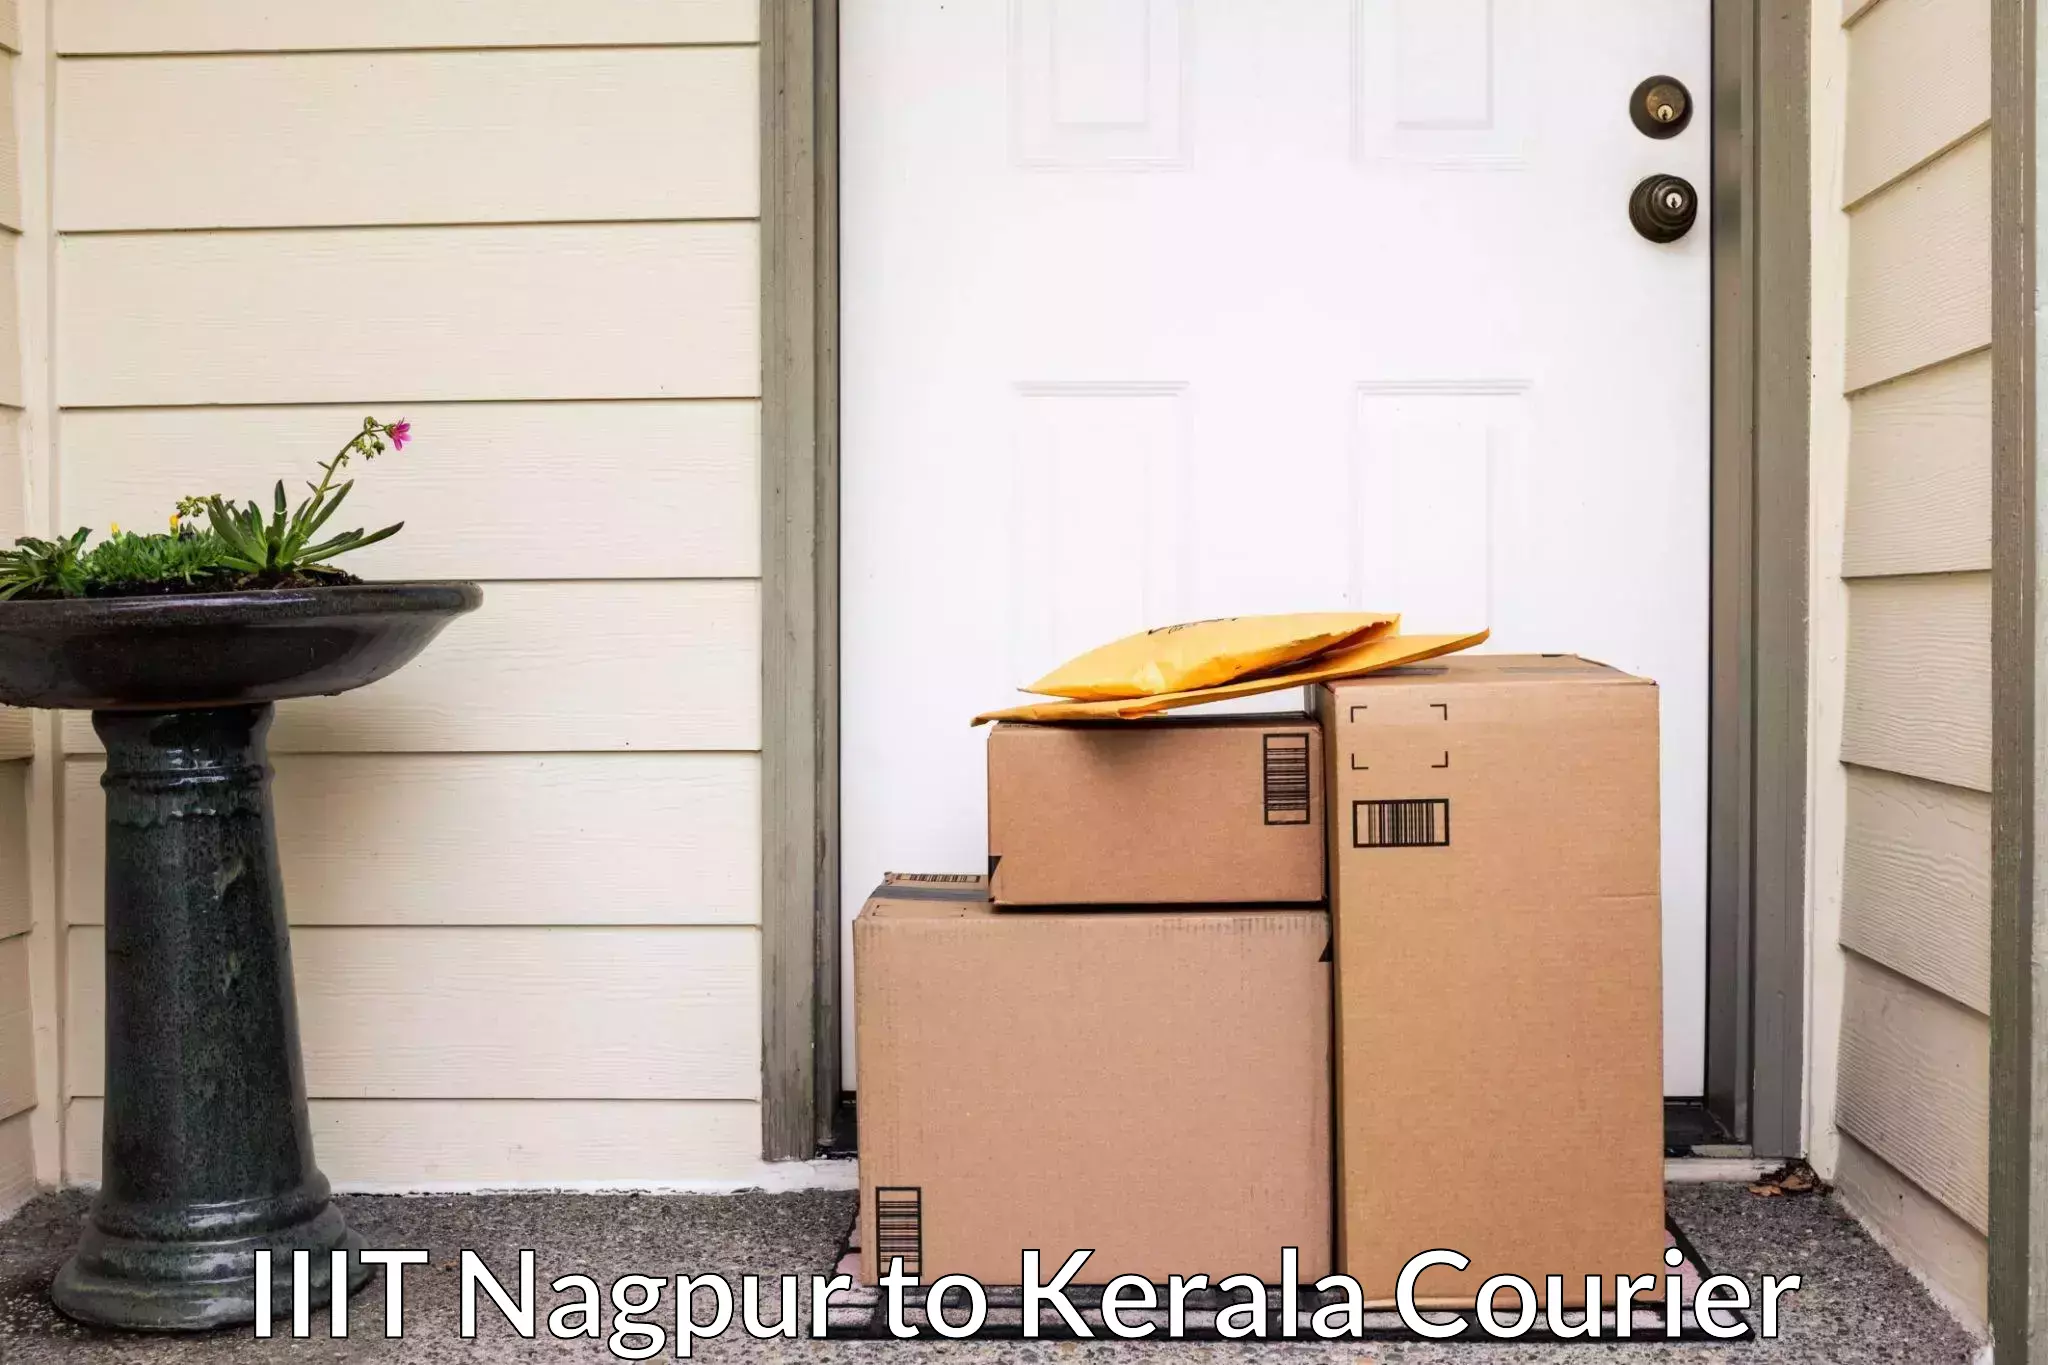 Trusted furniture transport IIIT Nagpur to Irinjalakuda